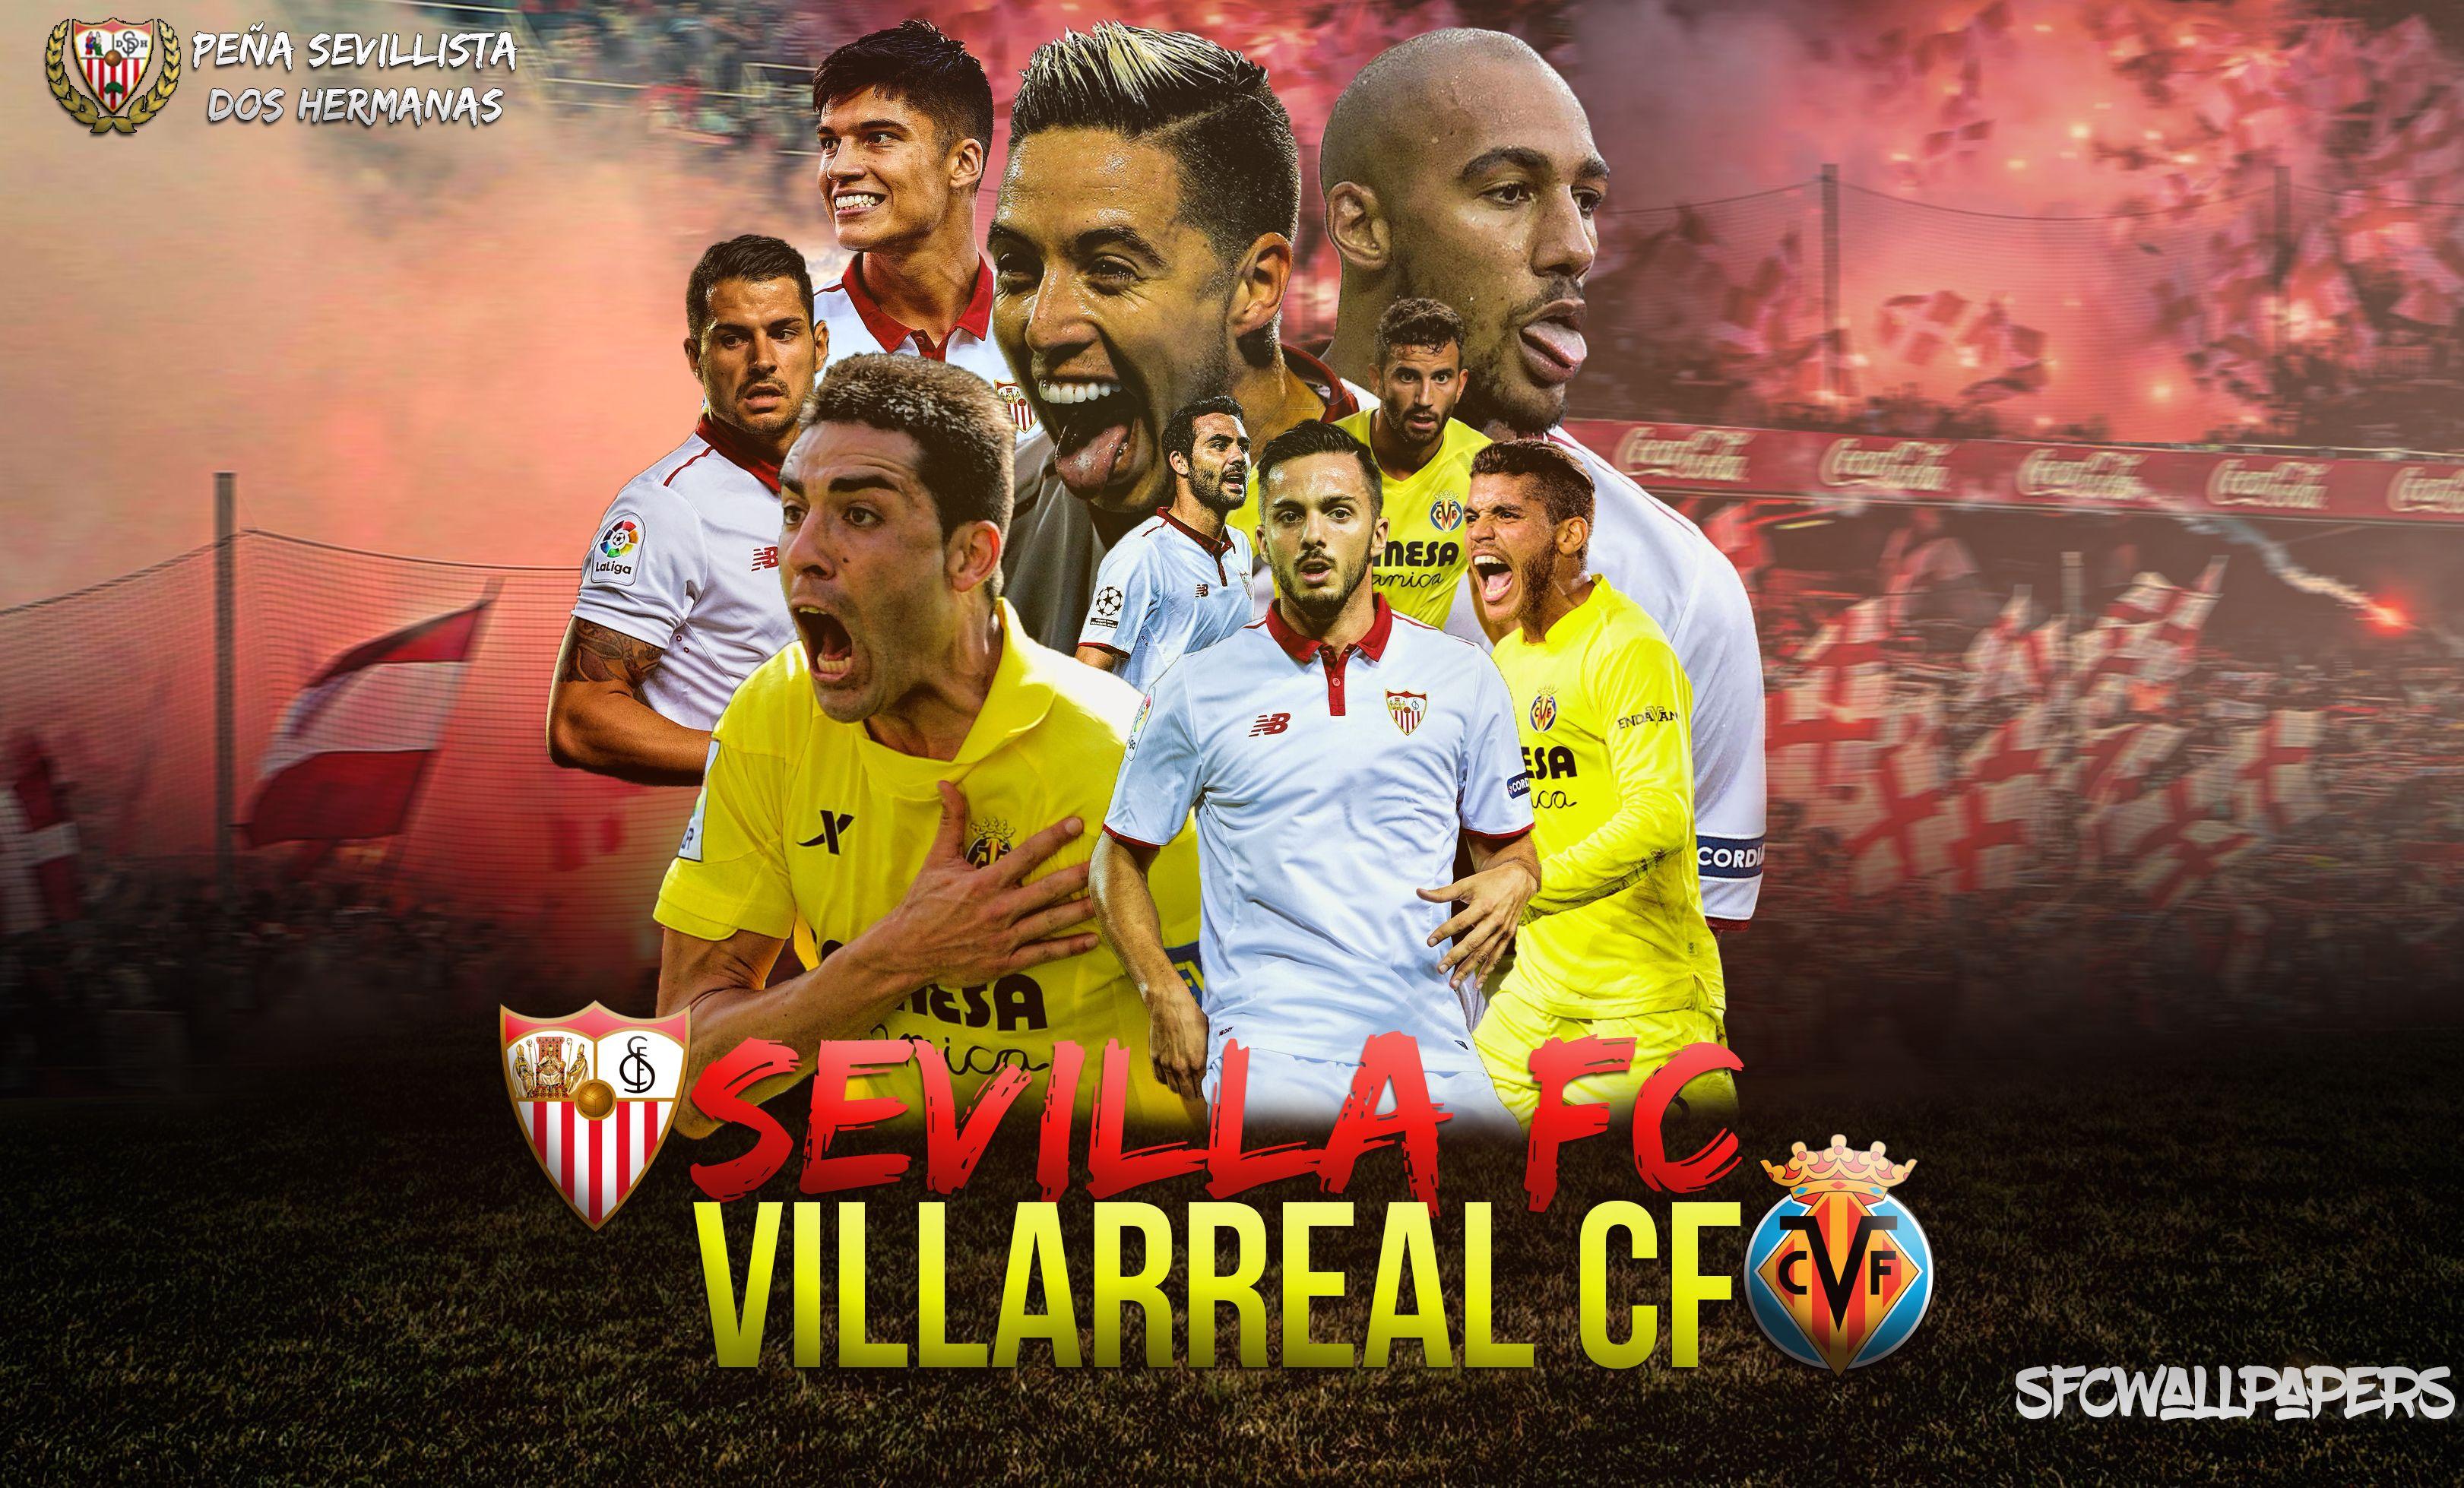 Sevilla FC Villarreal PSEVILLISTADosHermanas